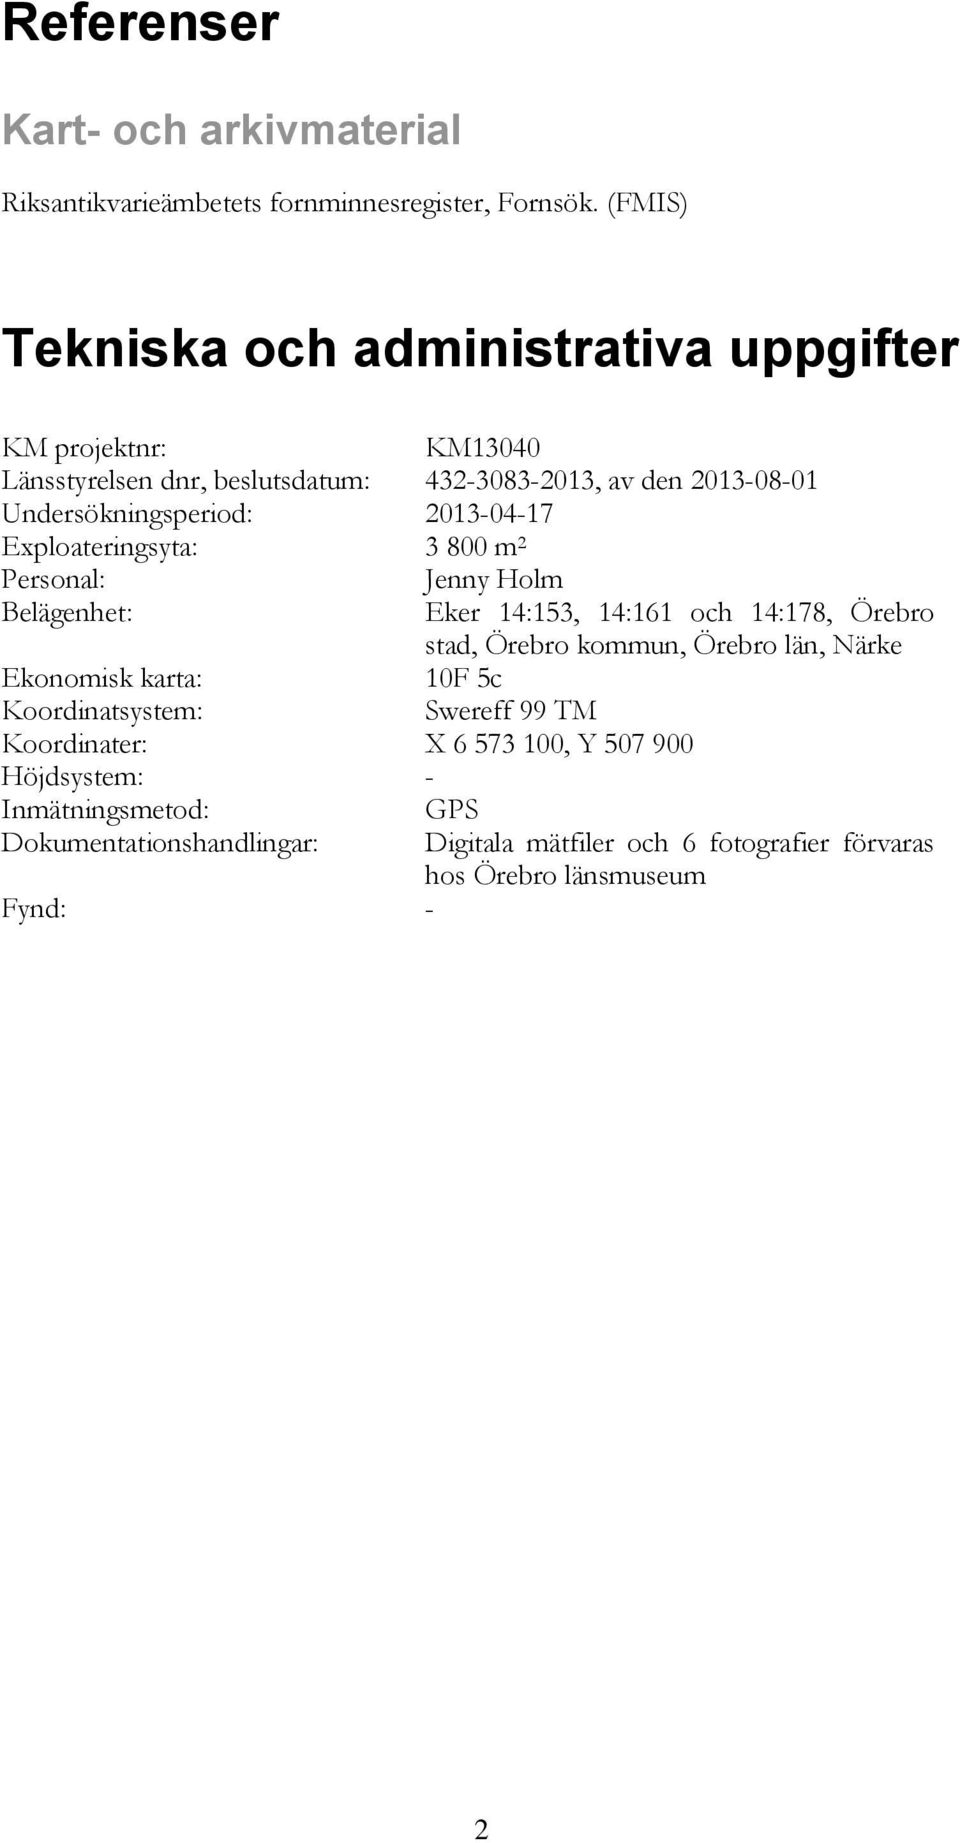 2013-04-17 Exploateringsyta: 3 800 m 2 Personal: Jenny Holm Belägenhet: Eker 14:153, 14:161 och 14:178, Örebro stad, Örebro kommun, Örebro län, Närke